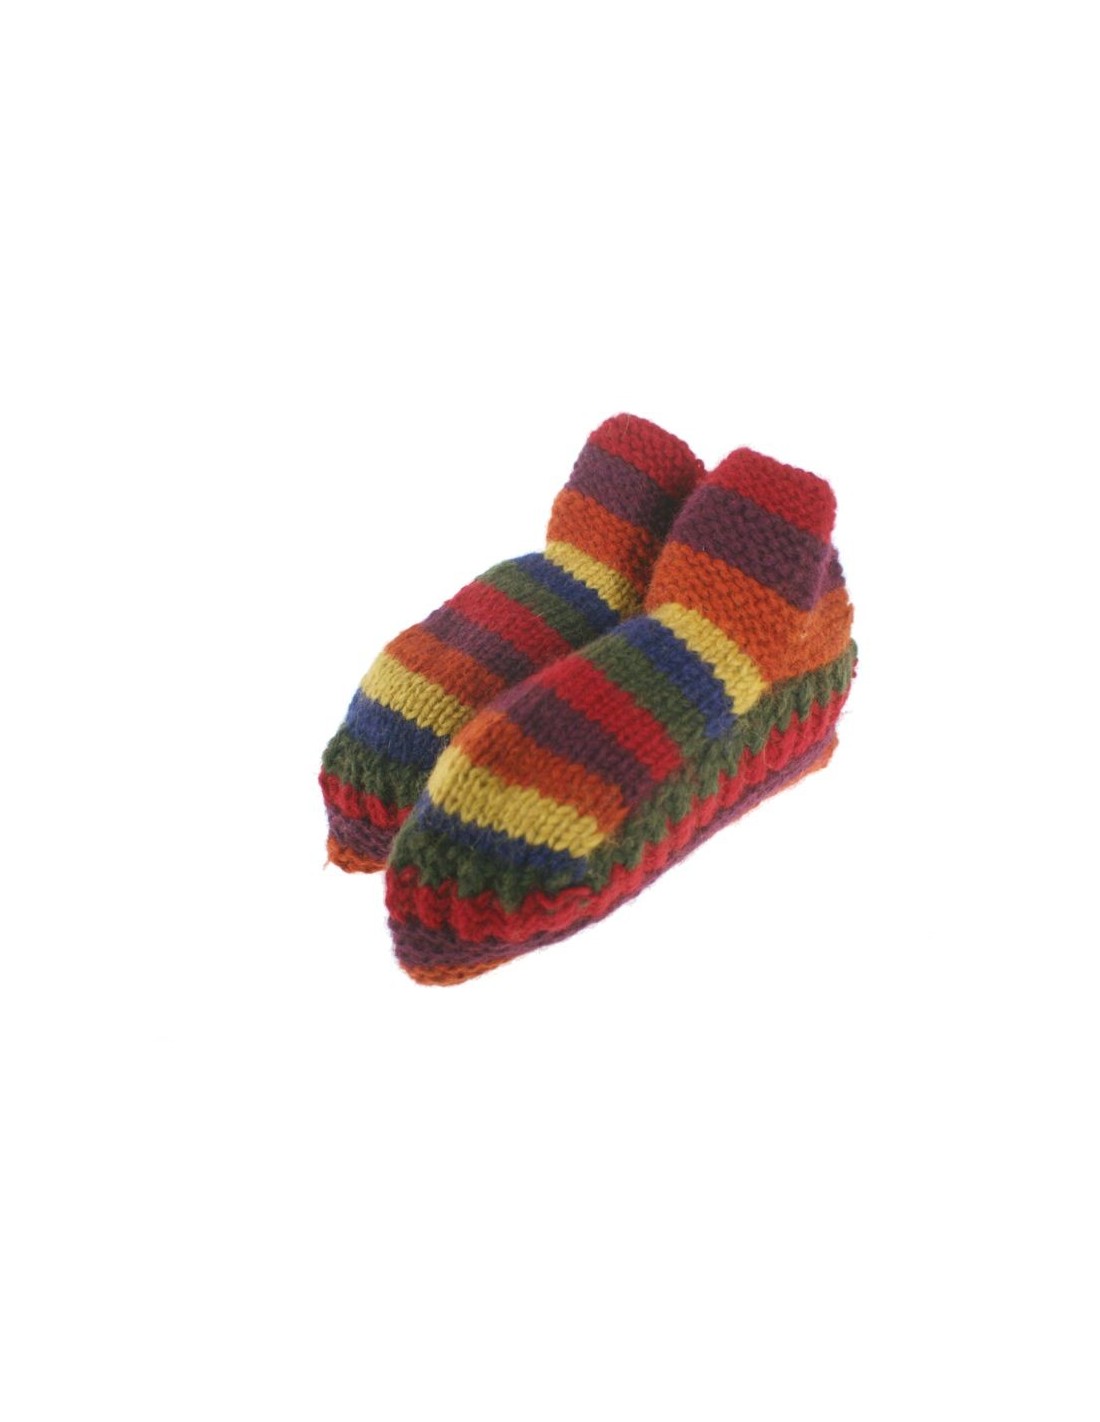 Patucos de lana artesanal para adulto unisex color marrón para dormir calientes suave y cómodo para regalo.